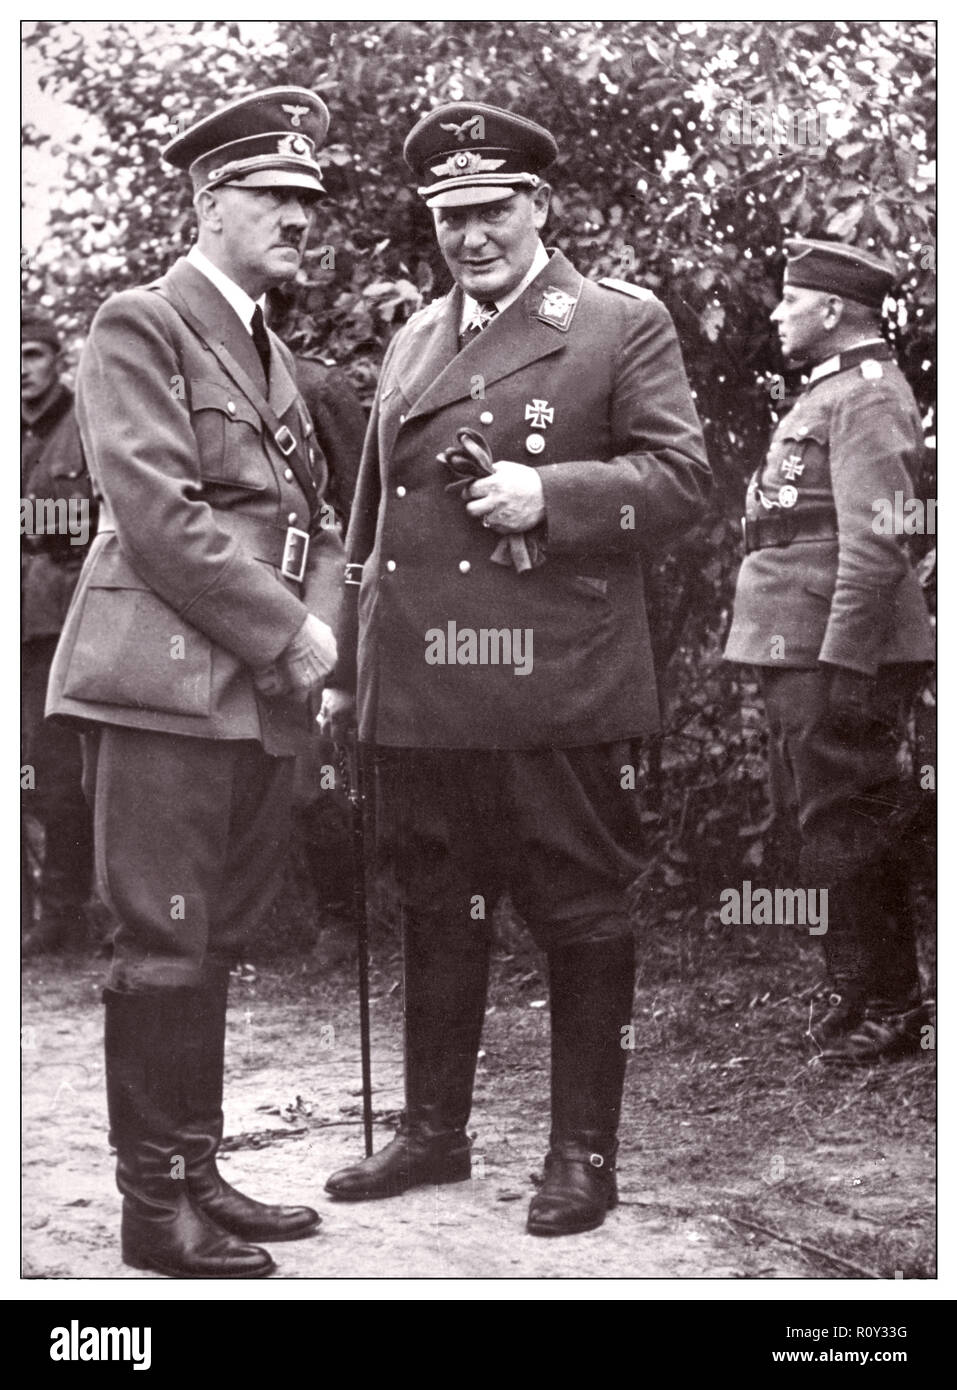 WW2 Nazi-Führer Adolf Hitler und Hermann Goering (Goring) in Militäruniform 1939 2. Weltkrieg Stockfoto